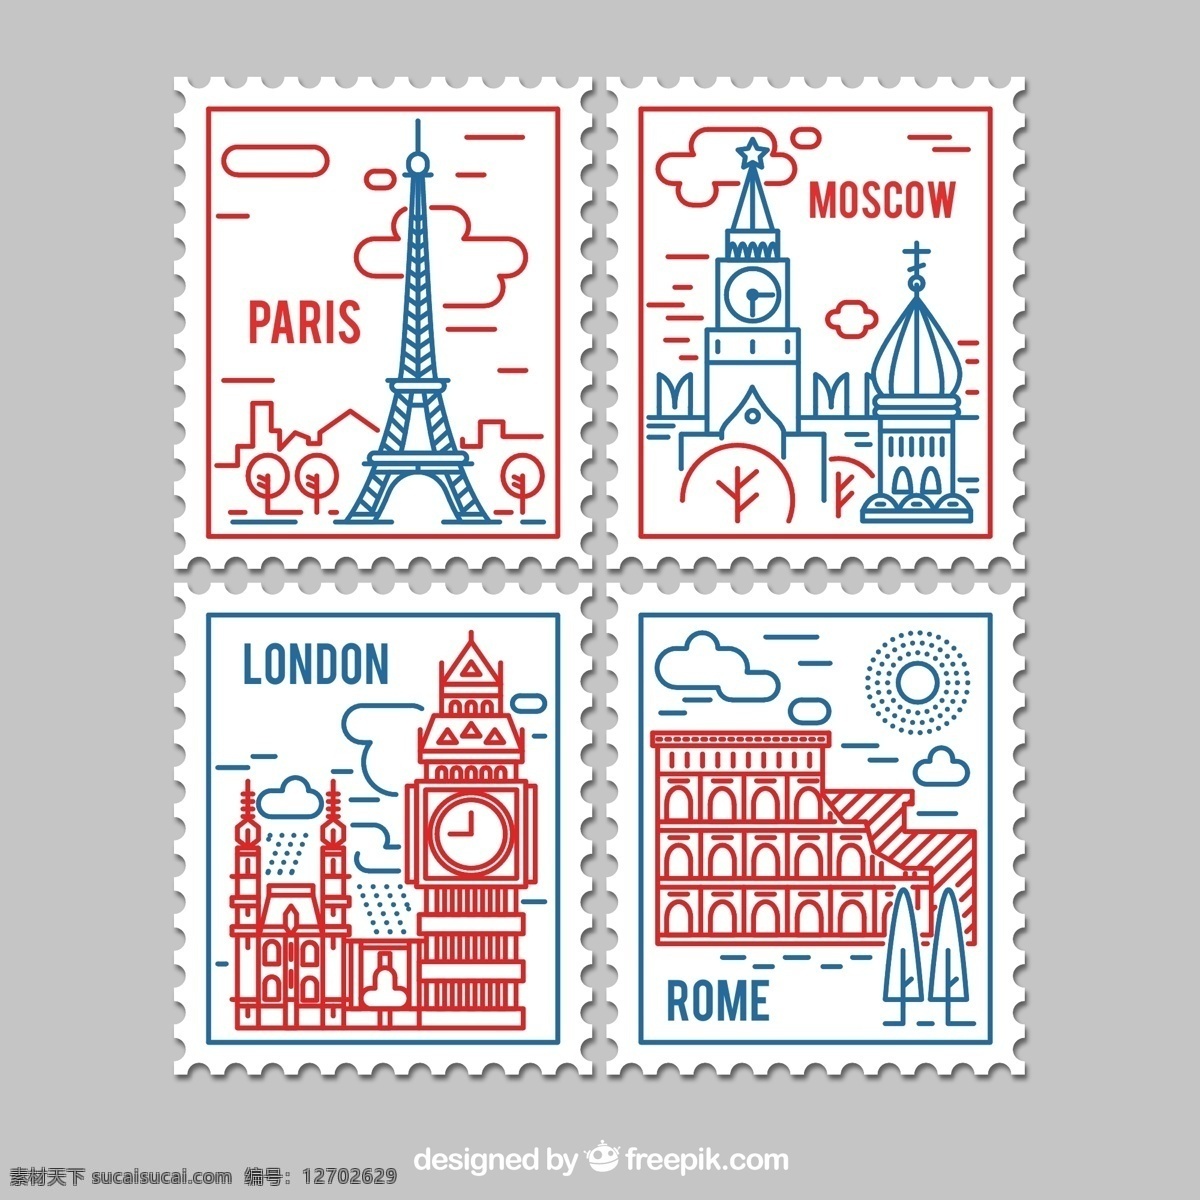 款 彩绘 著名 景点 邮票 矢量 线稿 建筑 巴黎 伦敦 大本钟 莫斯科 罗马